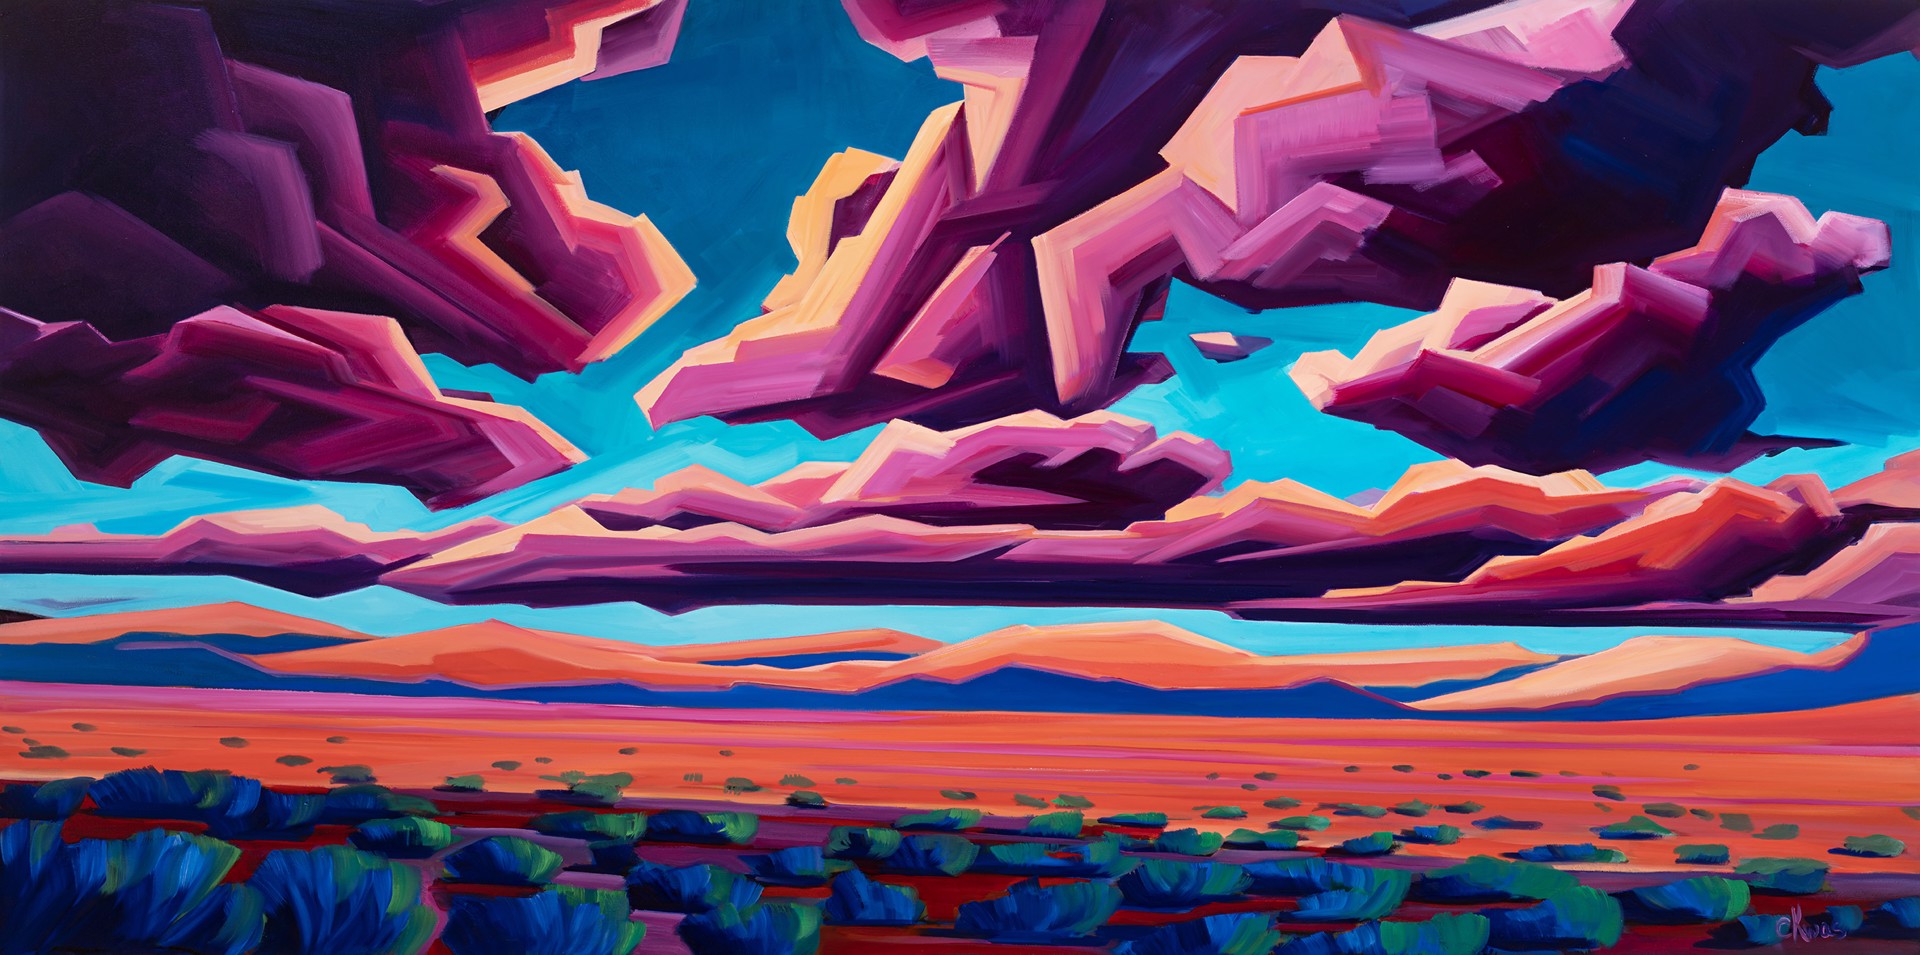 High Desert Landscape (Cloud Shapes) by Caroline Kwas